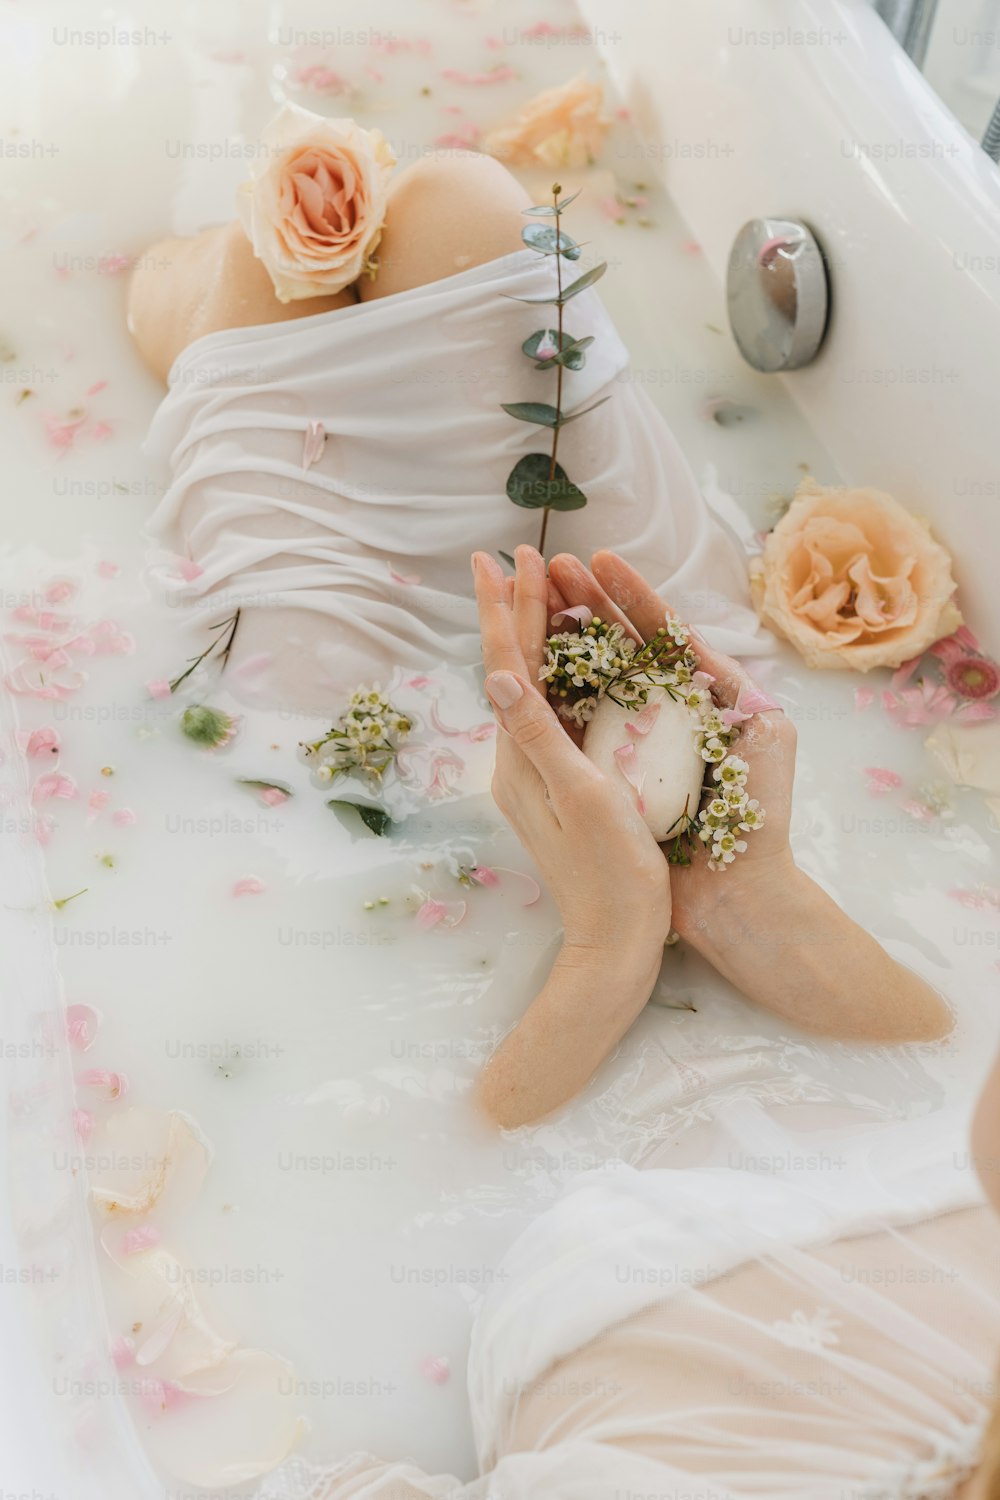 Una mujer en una bañera con flores en la cabeza